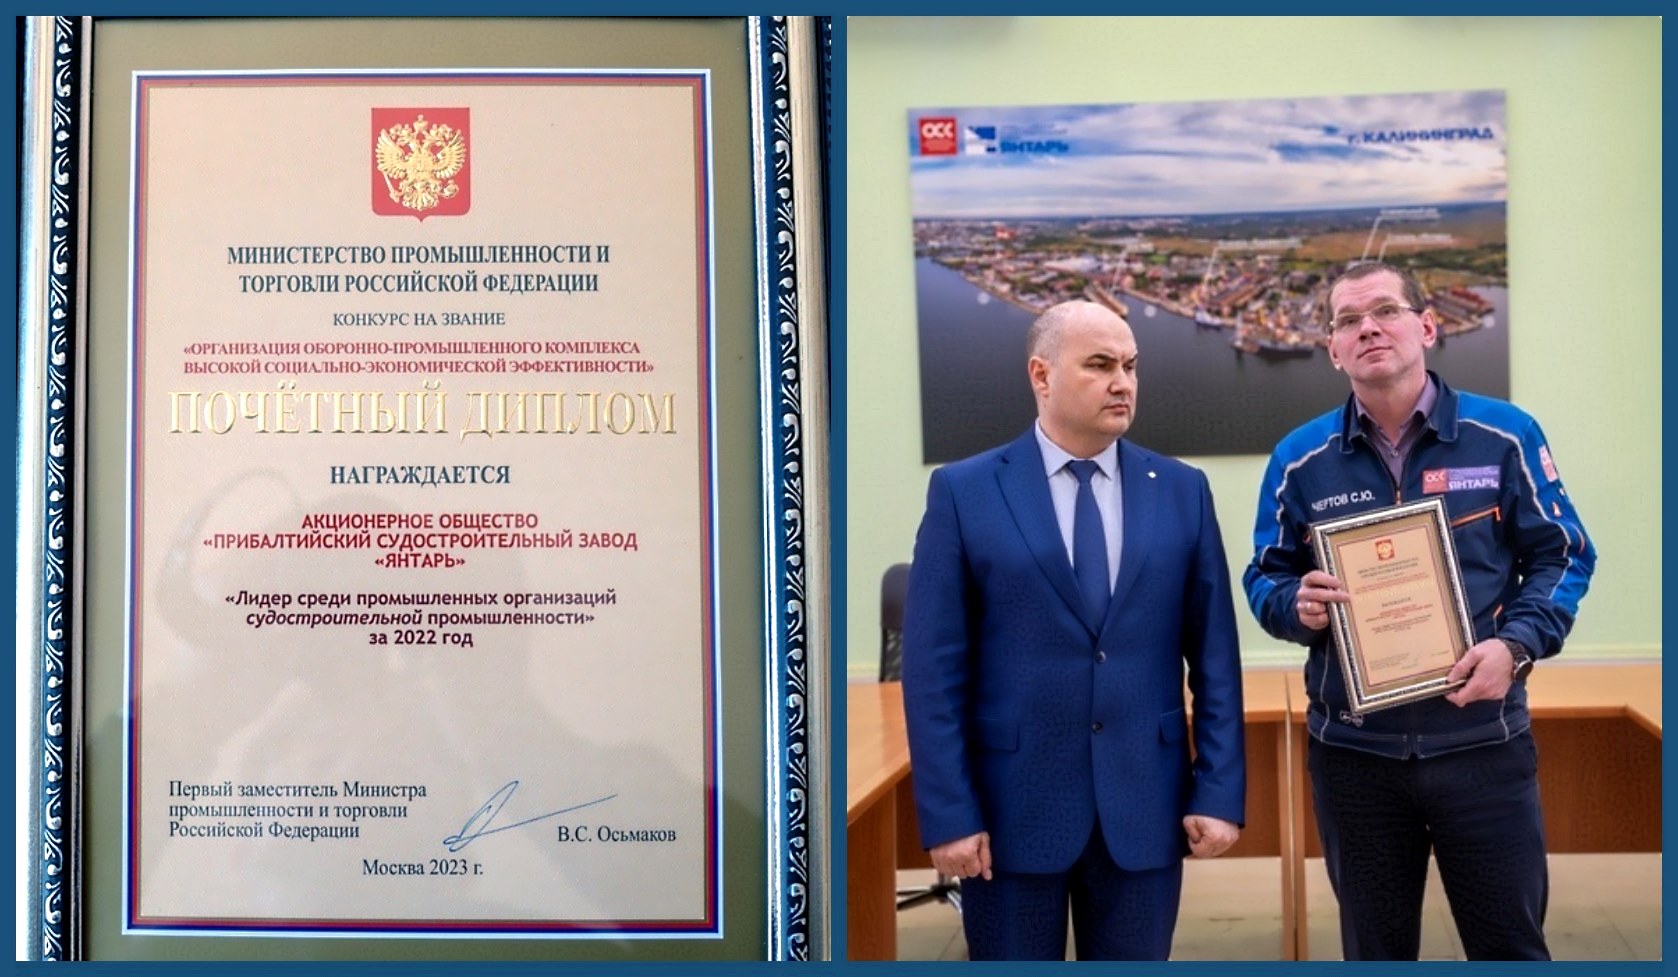 Завод «Янтарь» награжден почетным дипломом ежегодного конкурса Министерства промышленности и торговли России